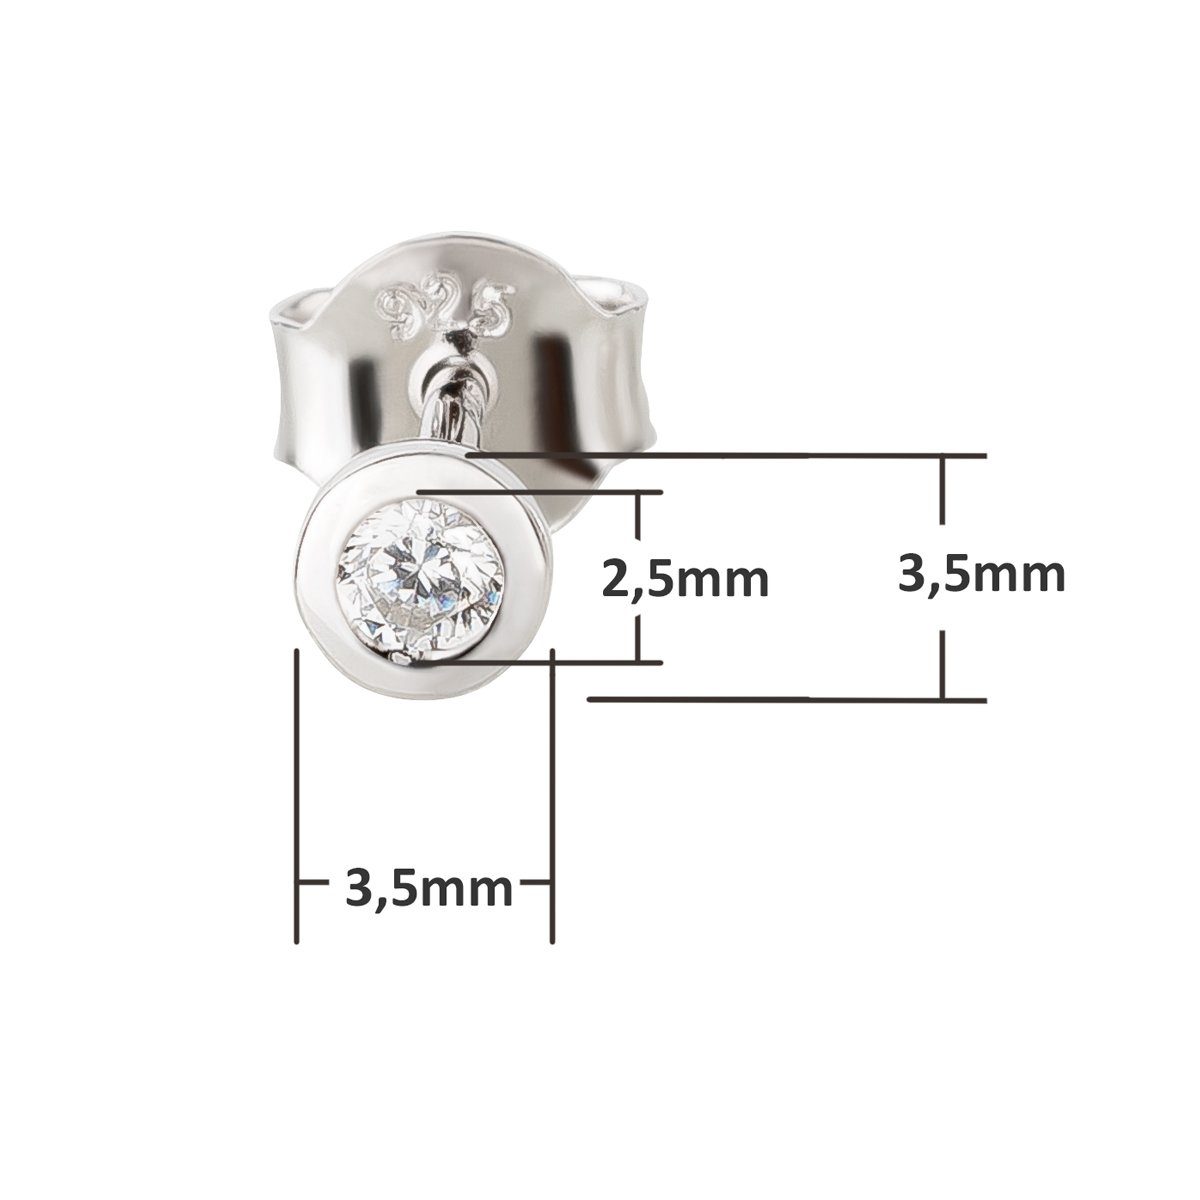 3,5mm Silber Schöner-SD Ohrringe Zirkonia Stecker Kristall, Paar Ohrstecker 925 Silberohrringe Kleine Rhodium,